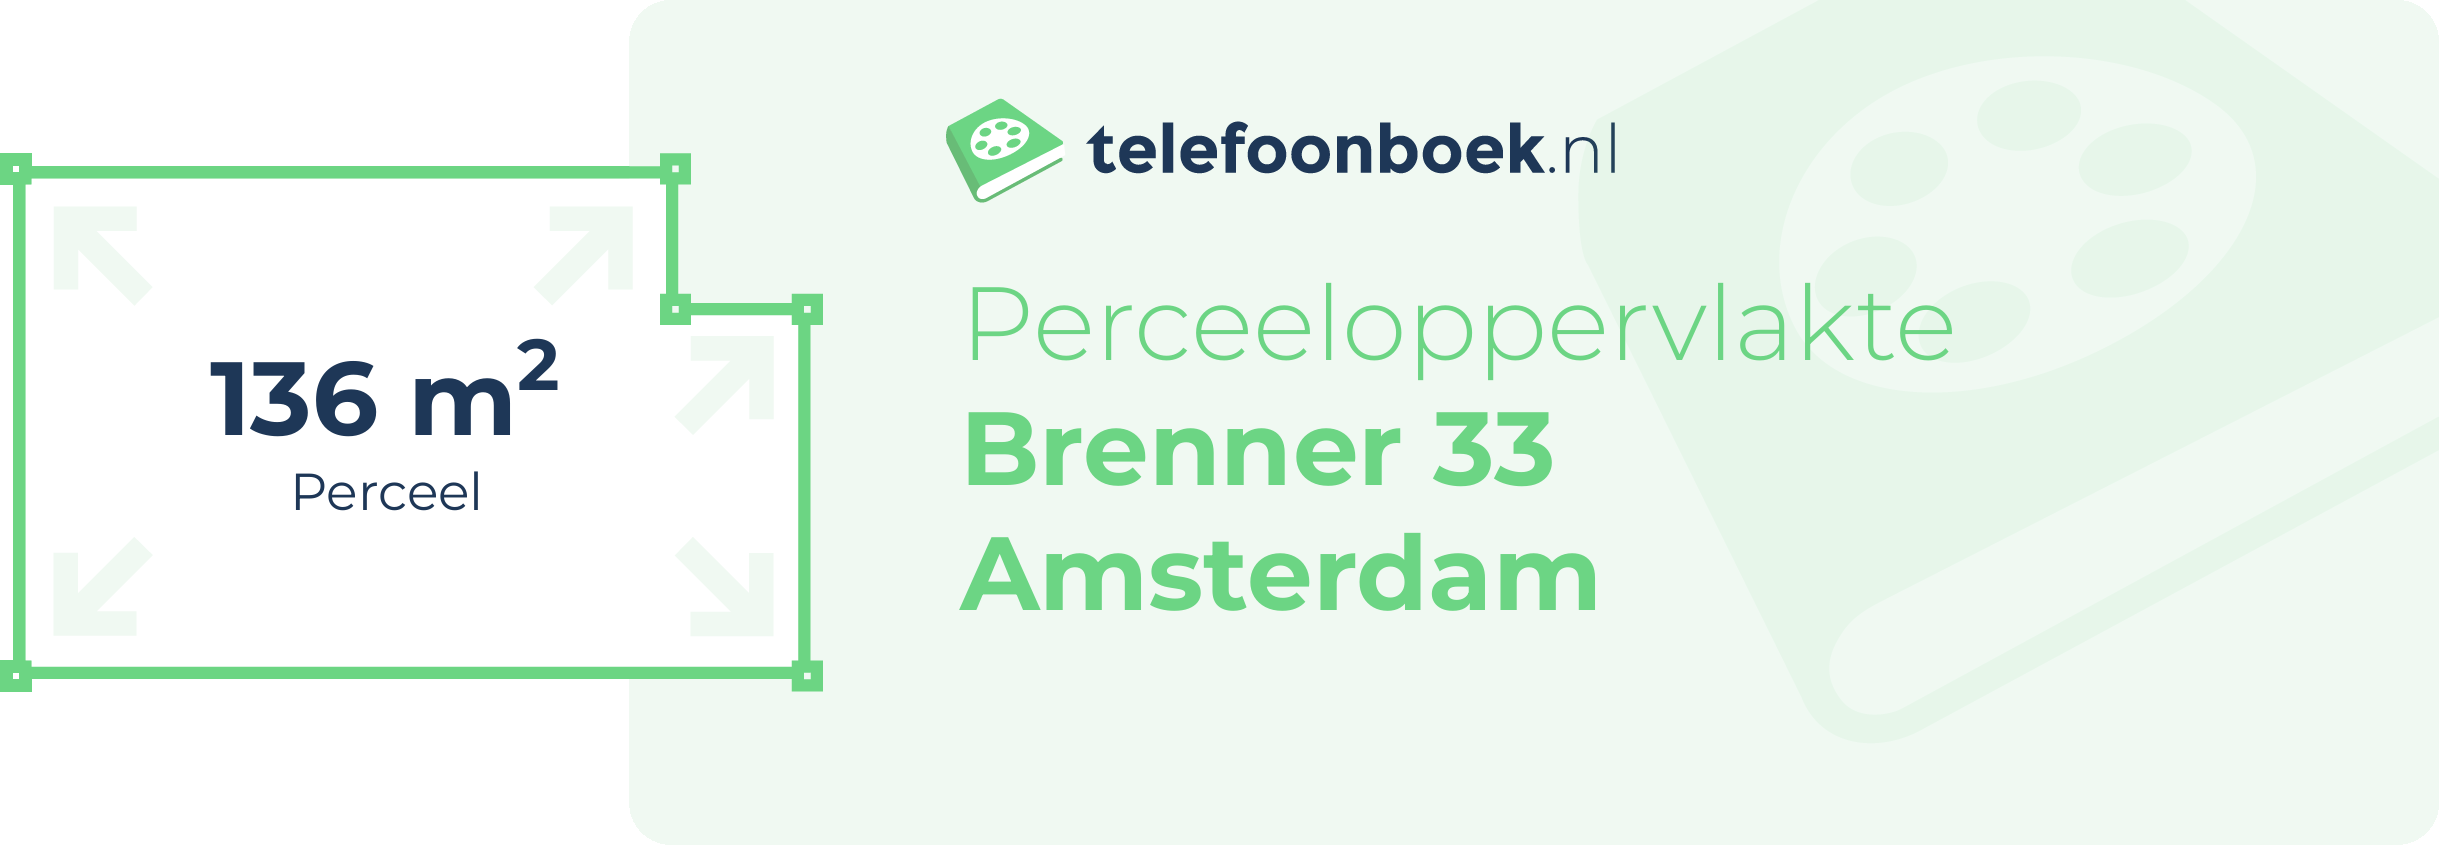 Perceeloppervlakte Brenner 33 Amsterdam